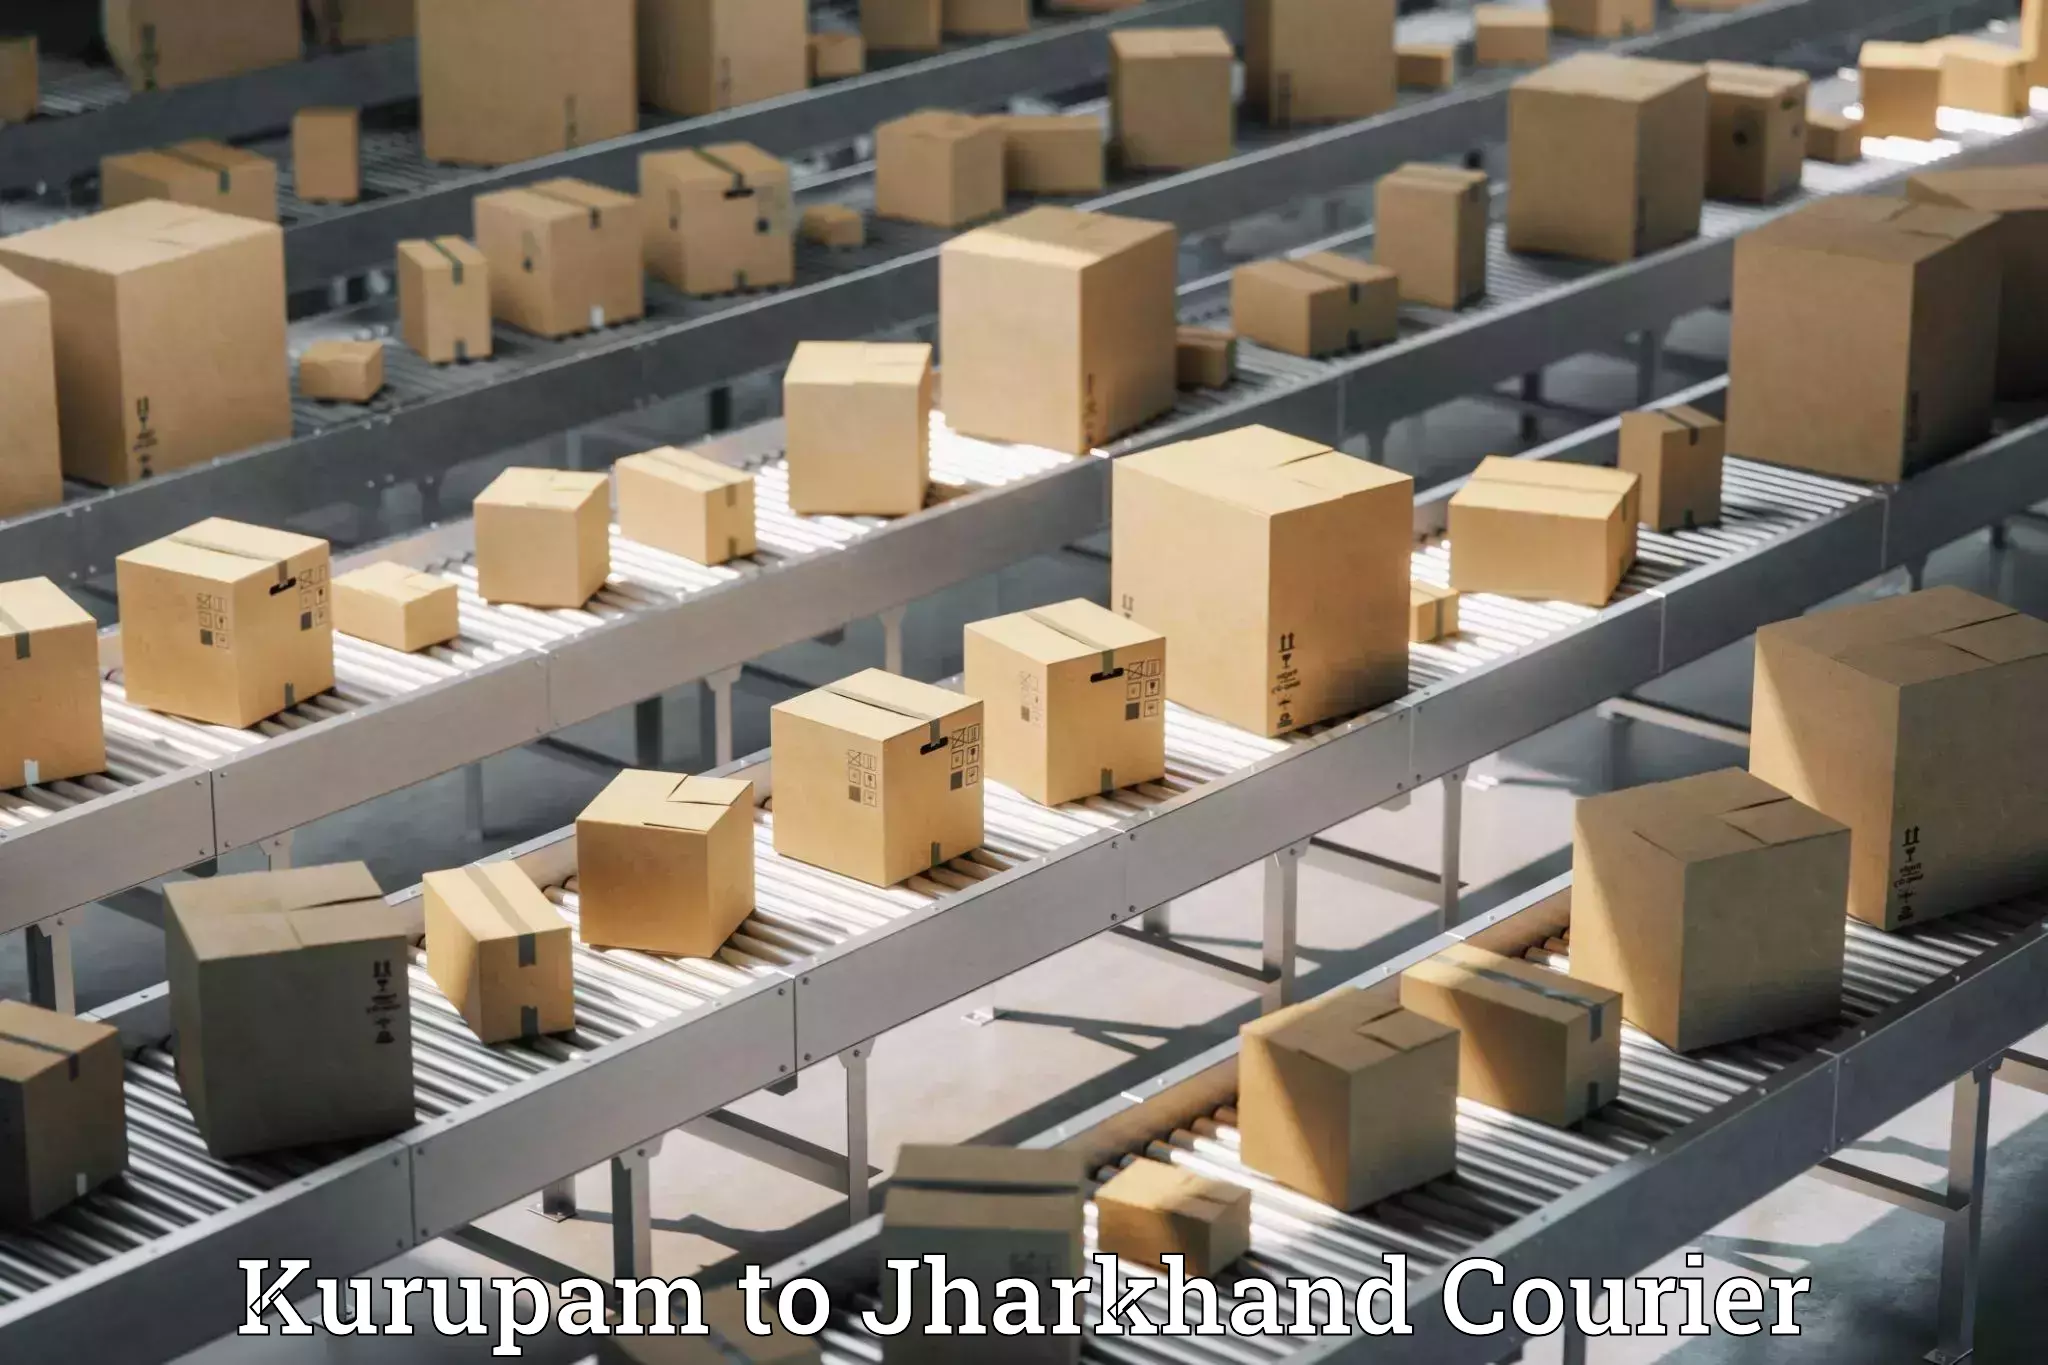 High-capacity shipping options Kurupam to Adityapur